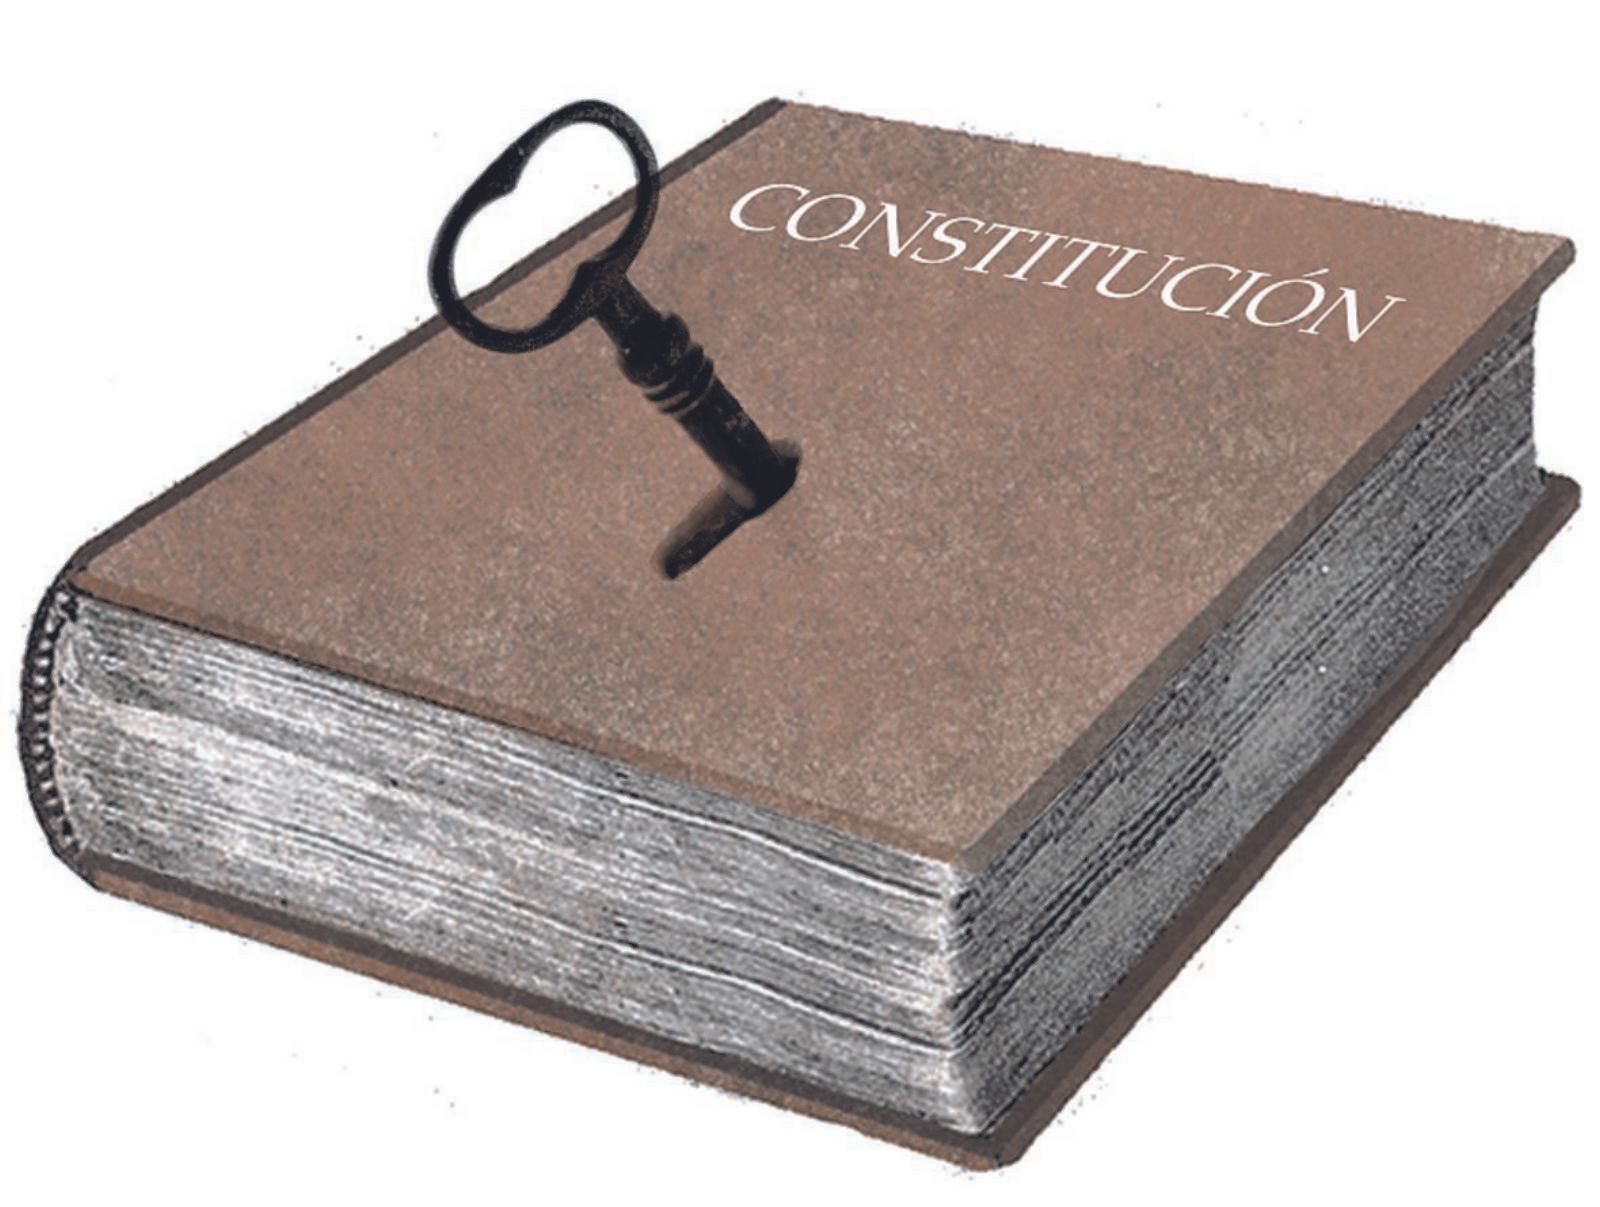 La Constitución en bancarrota